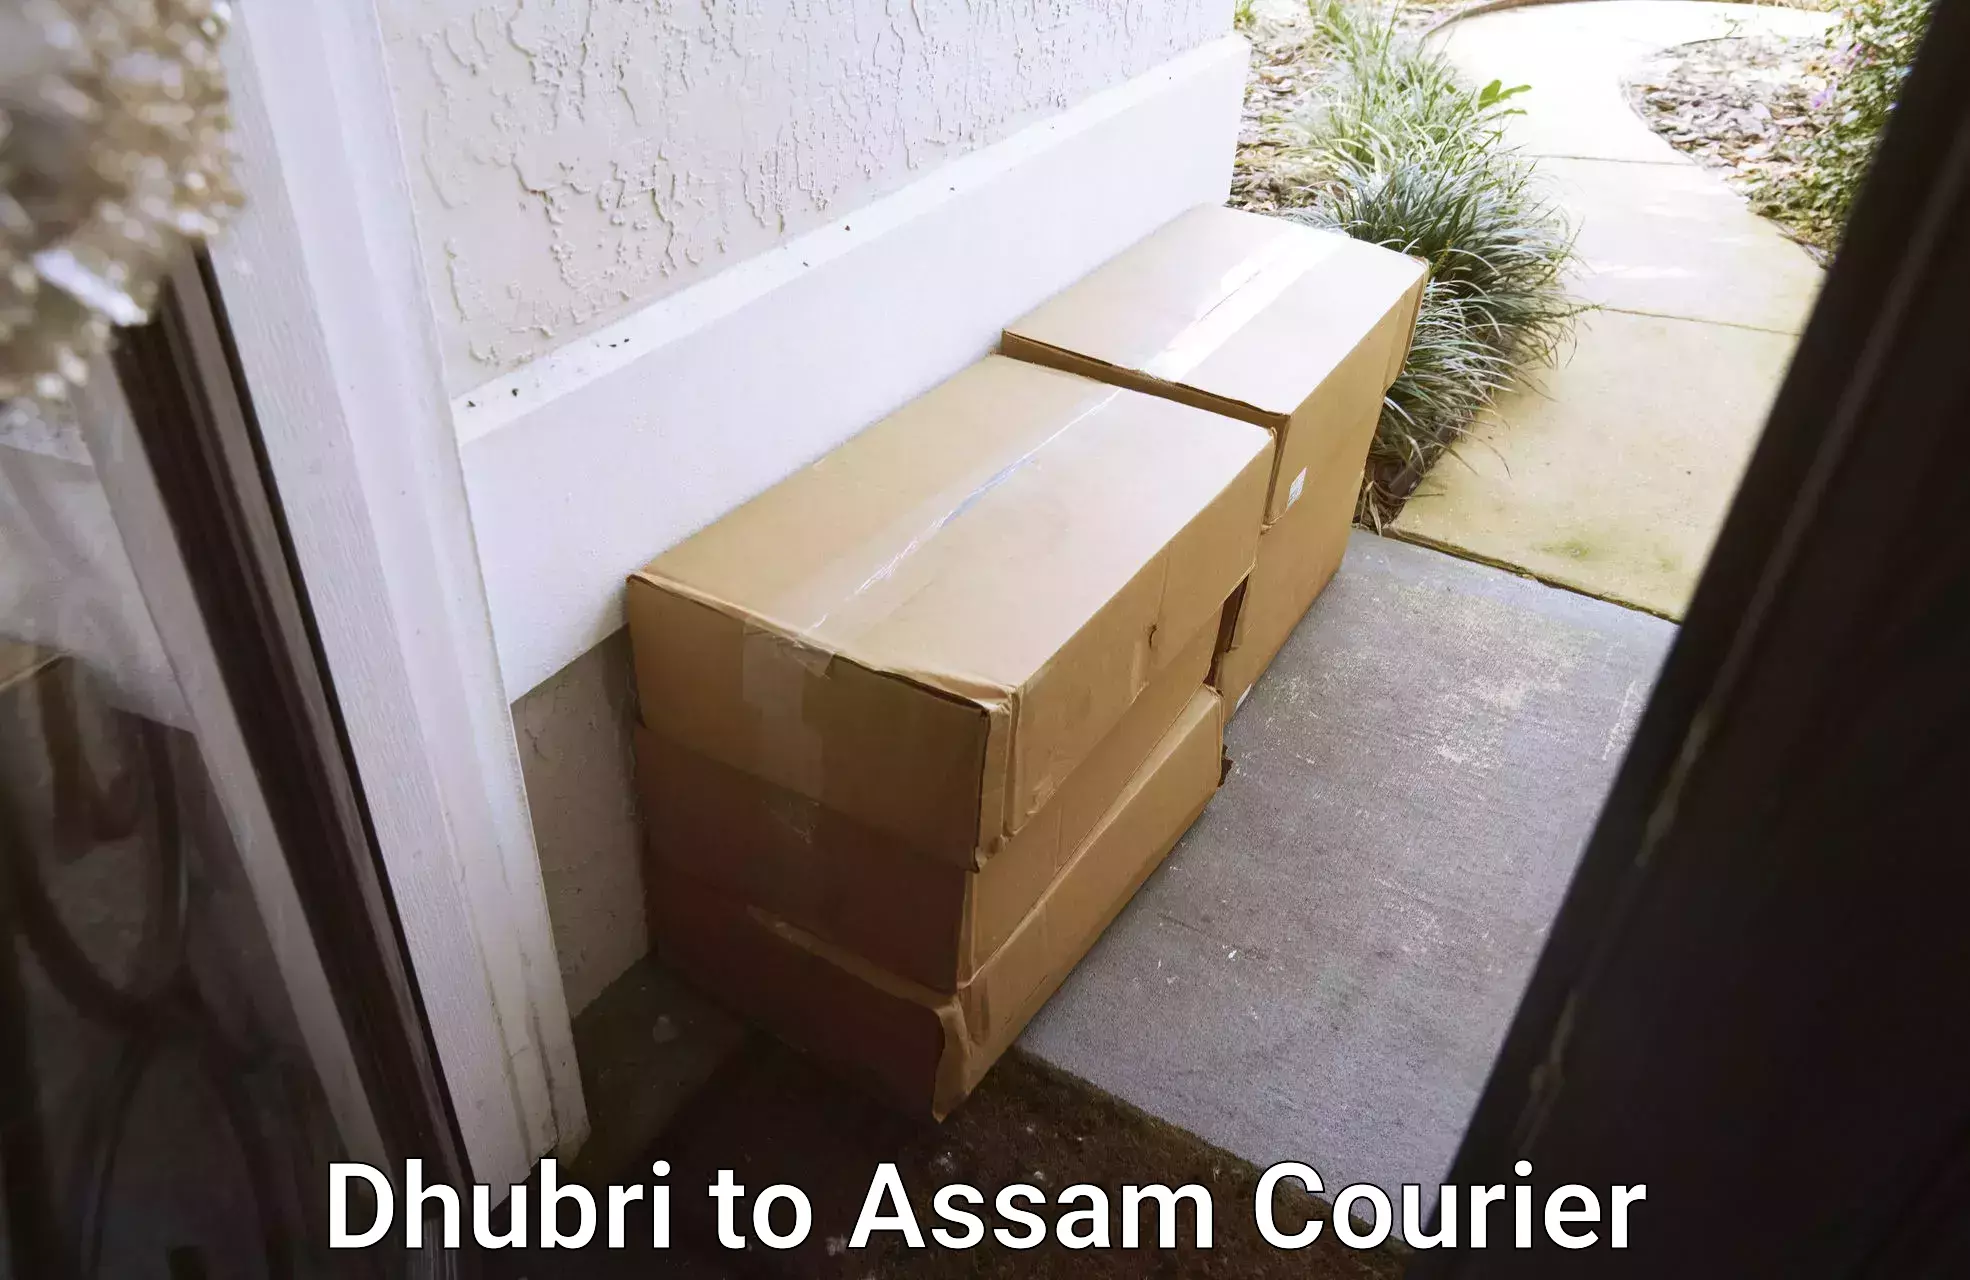 Flexible parcel services Dhubri to Amoni